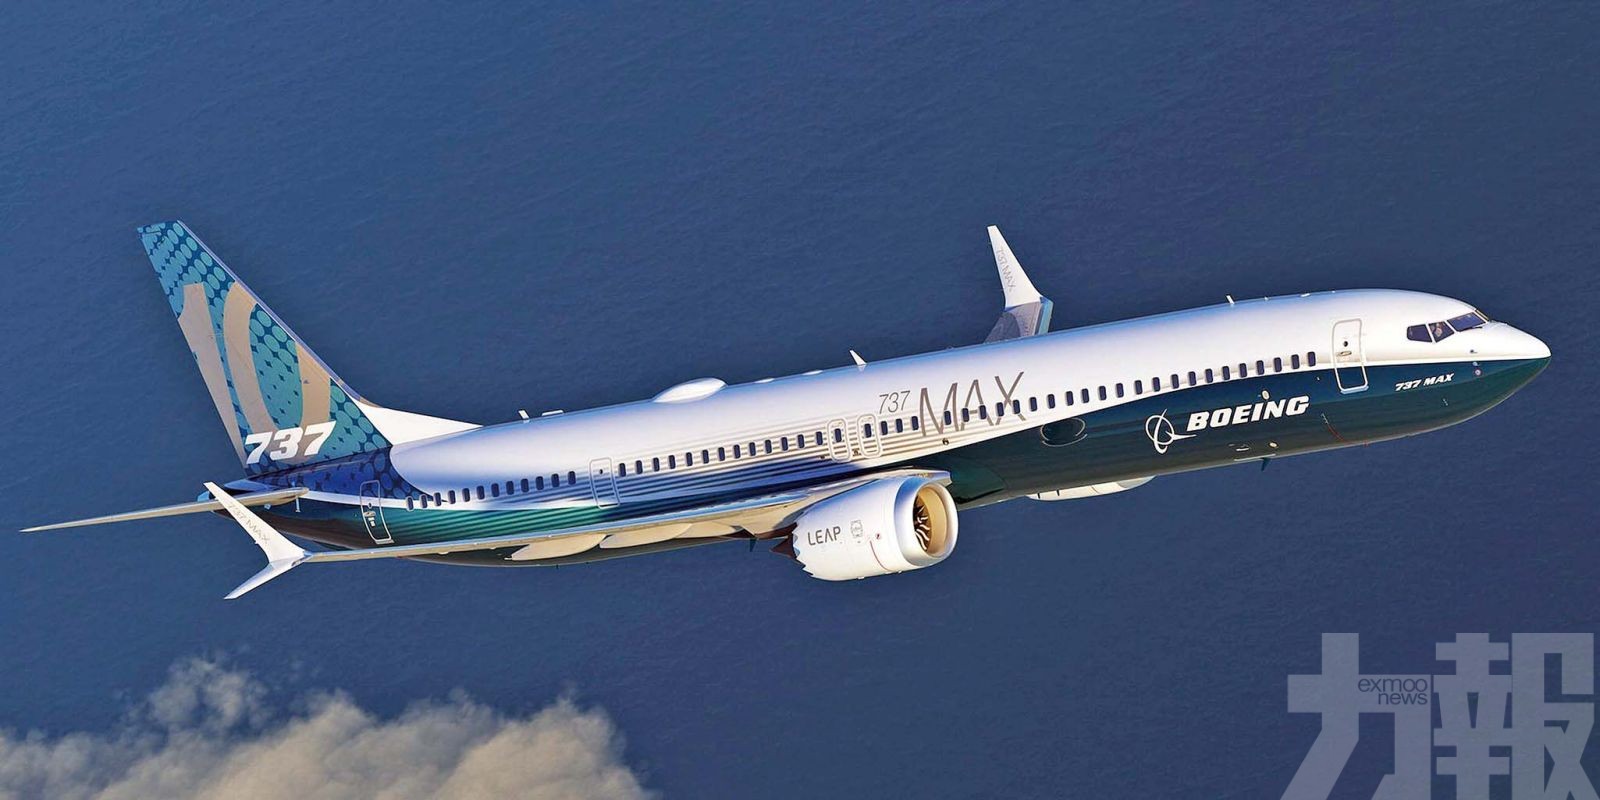 逾三分一波音737 MAX停飛 美國堅稱仍「適航」